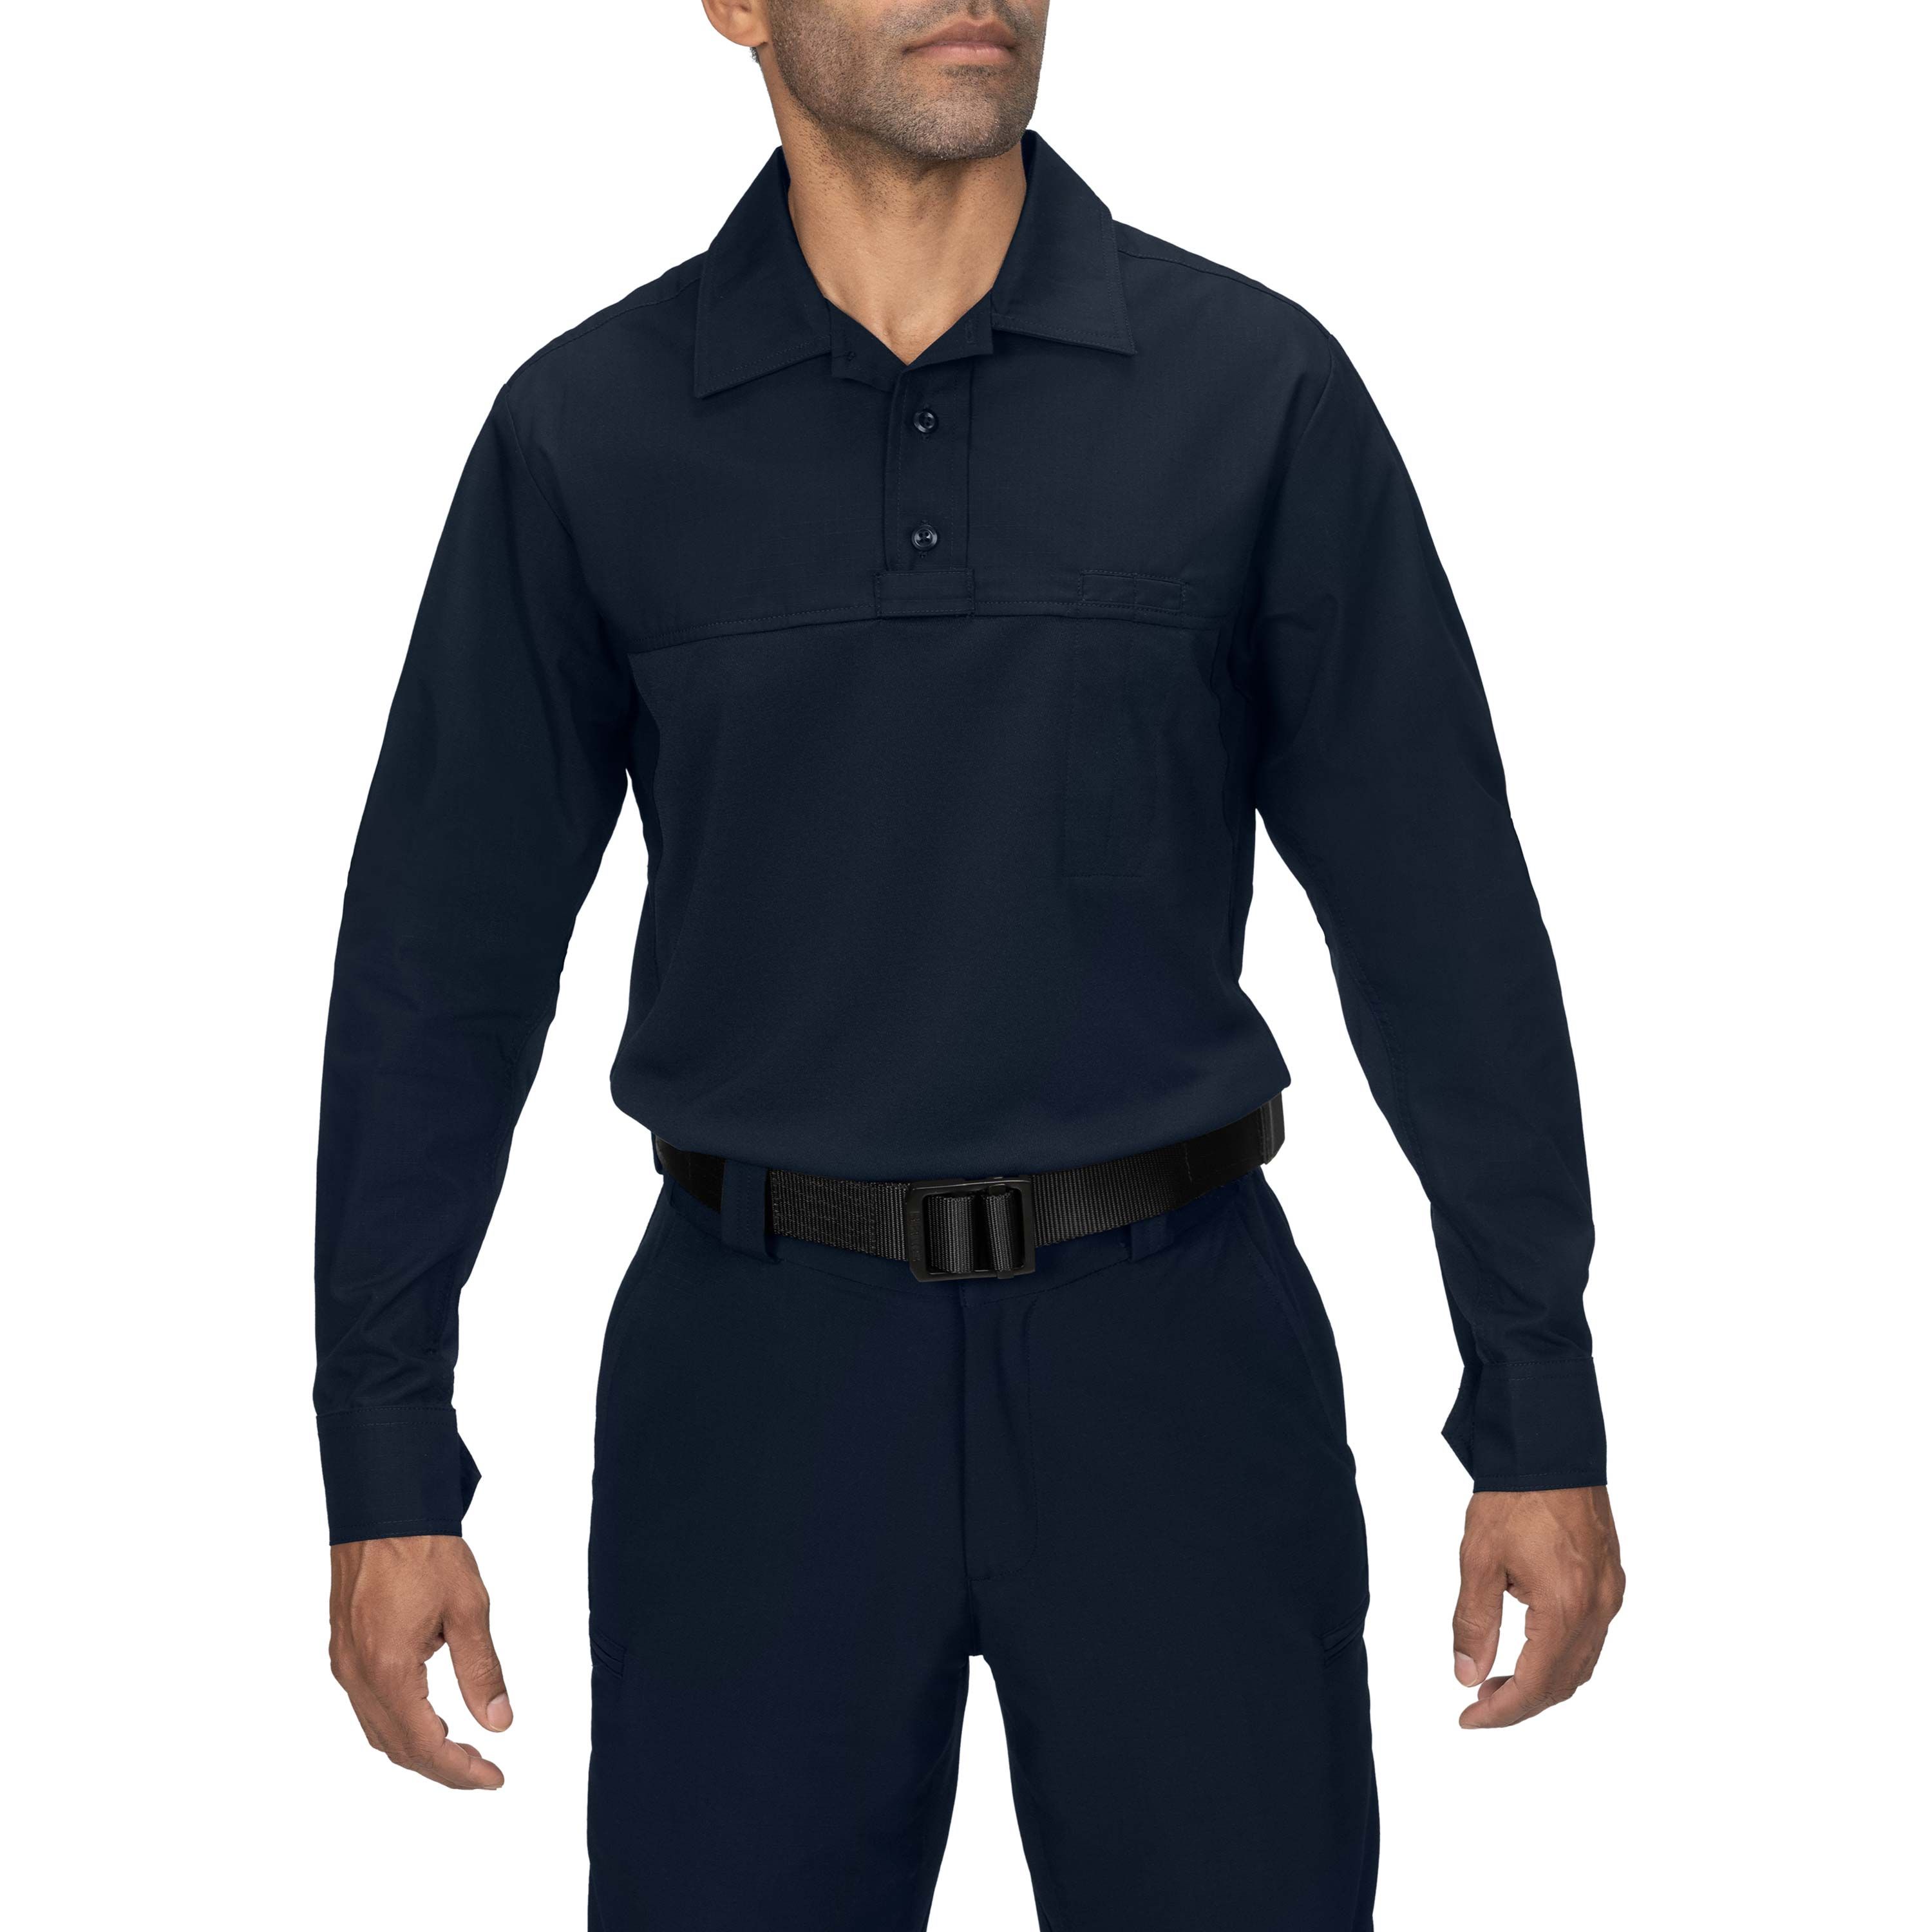 Verkaufsförderung Blauer - 8781 - Long ArmorSkin Shirt Shirt Base Long Tactical Base Sleeve Sleeve 